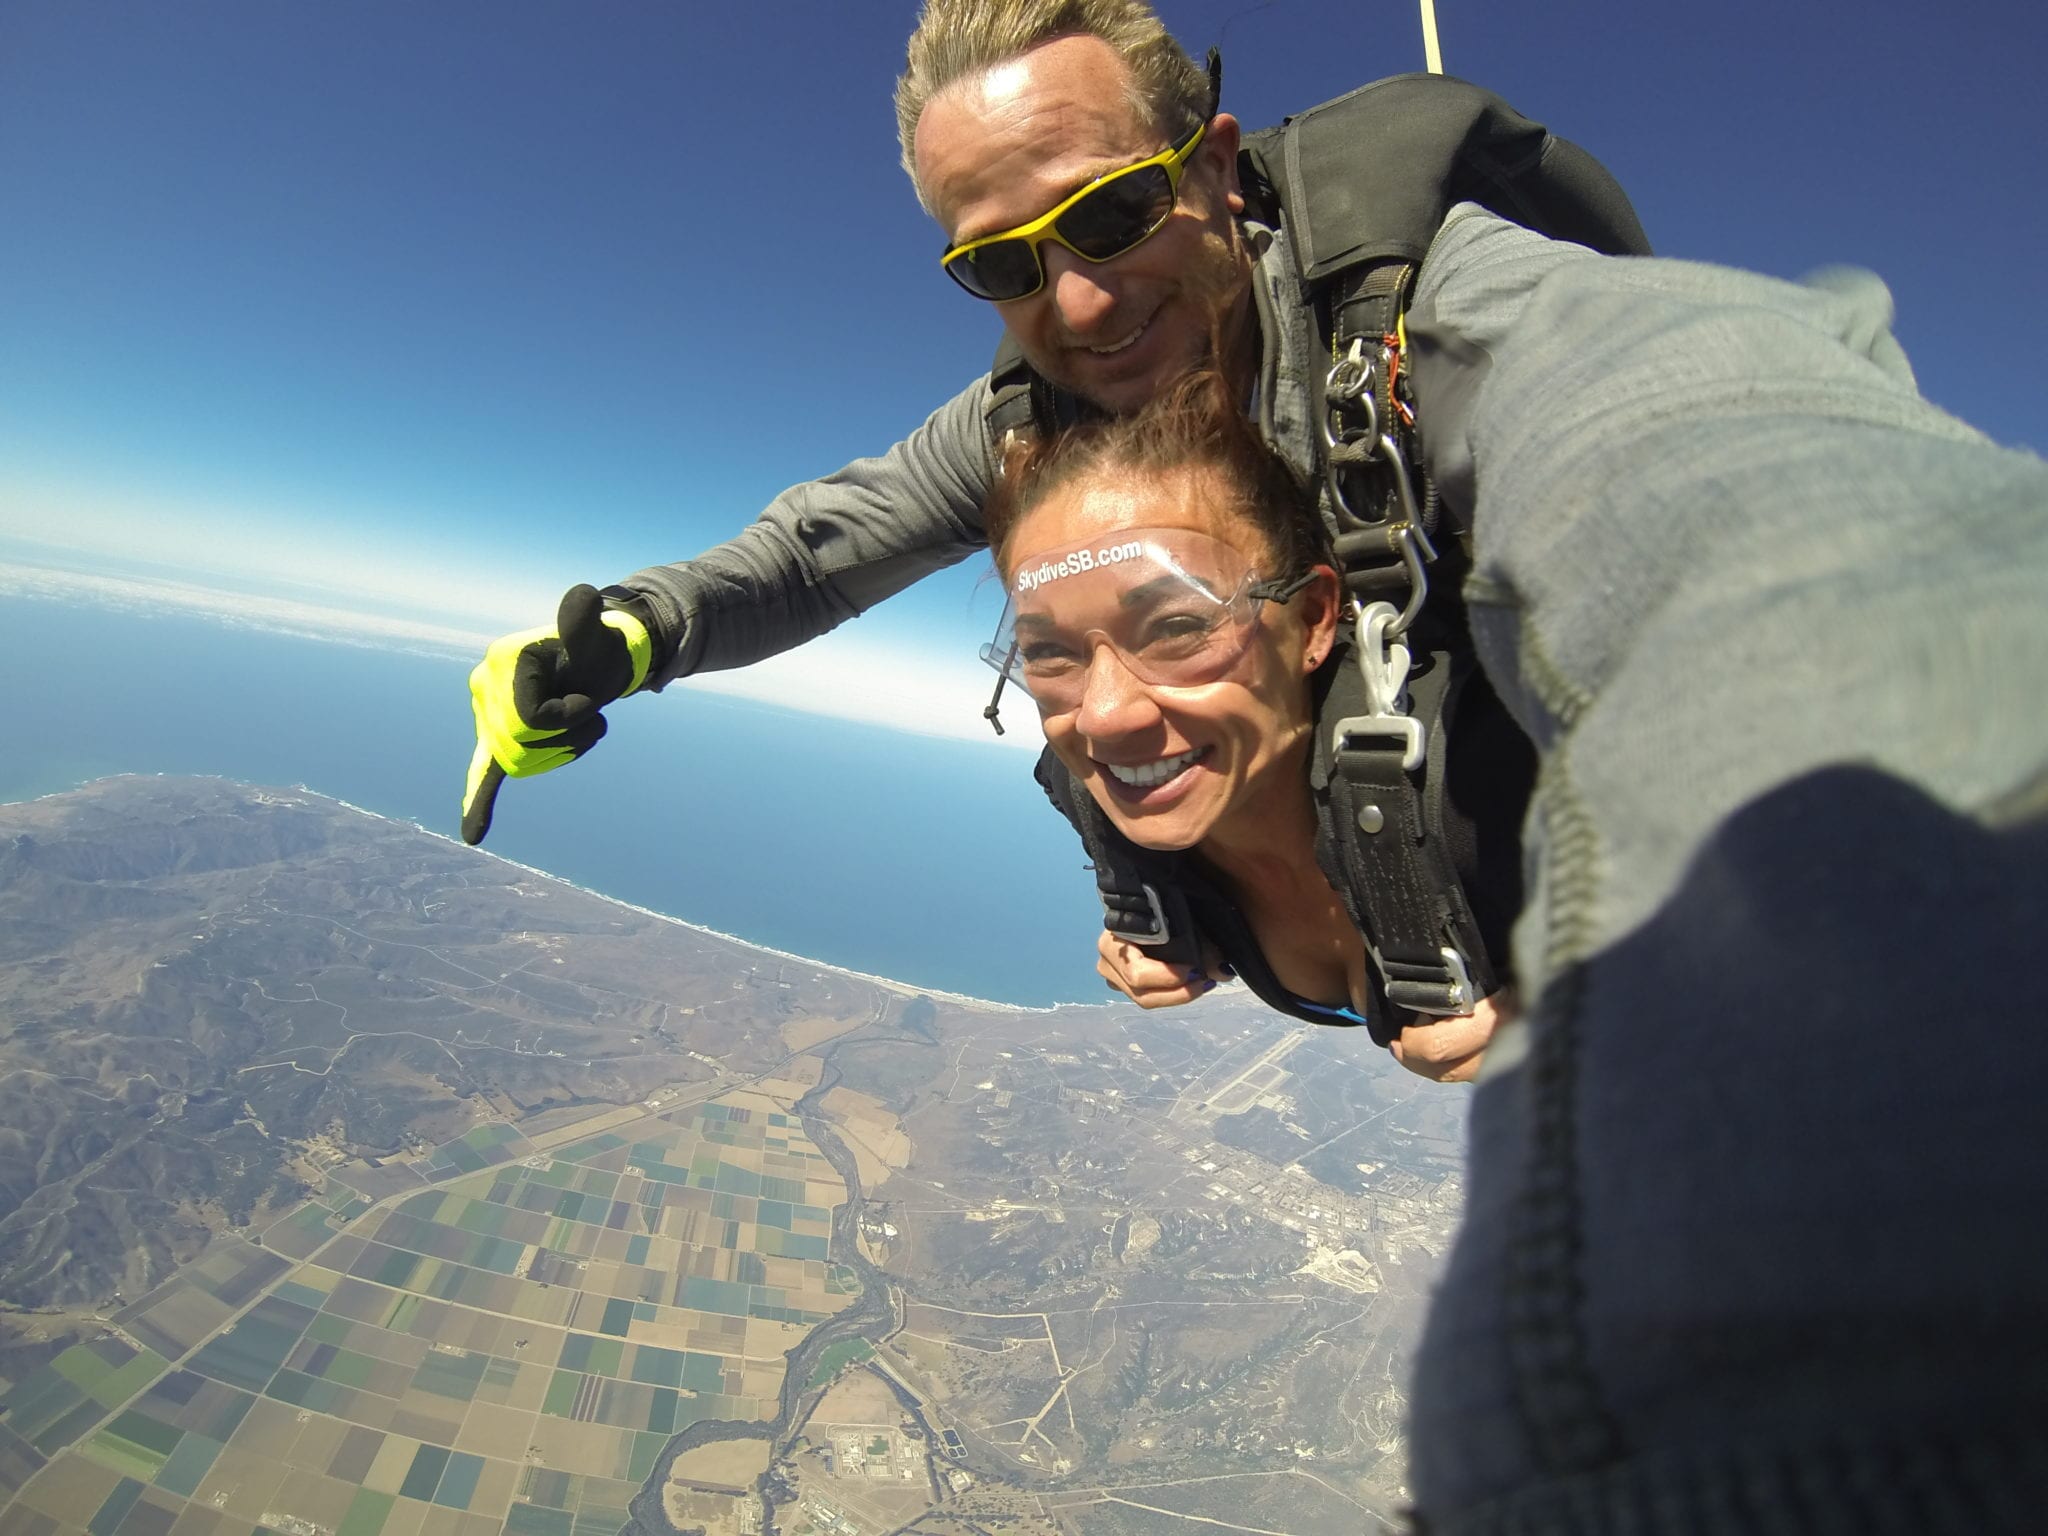 tandem skydiving in santa barbara county